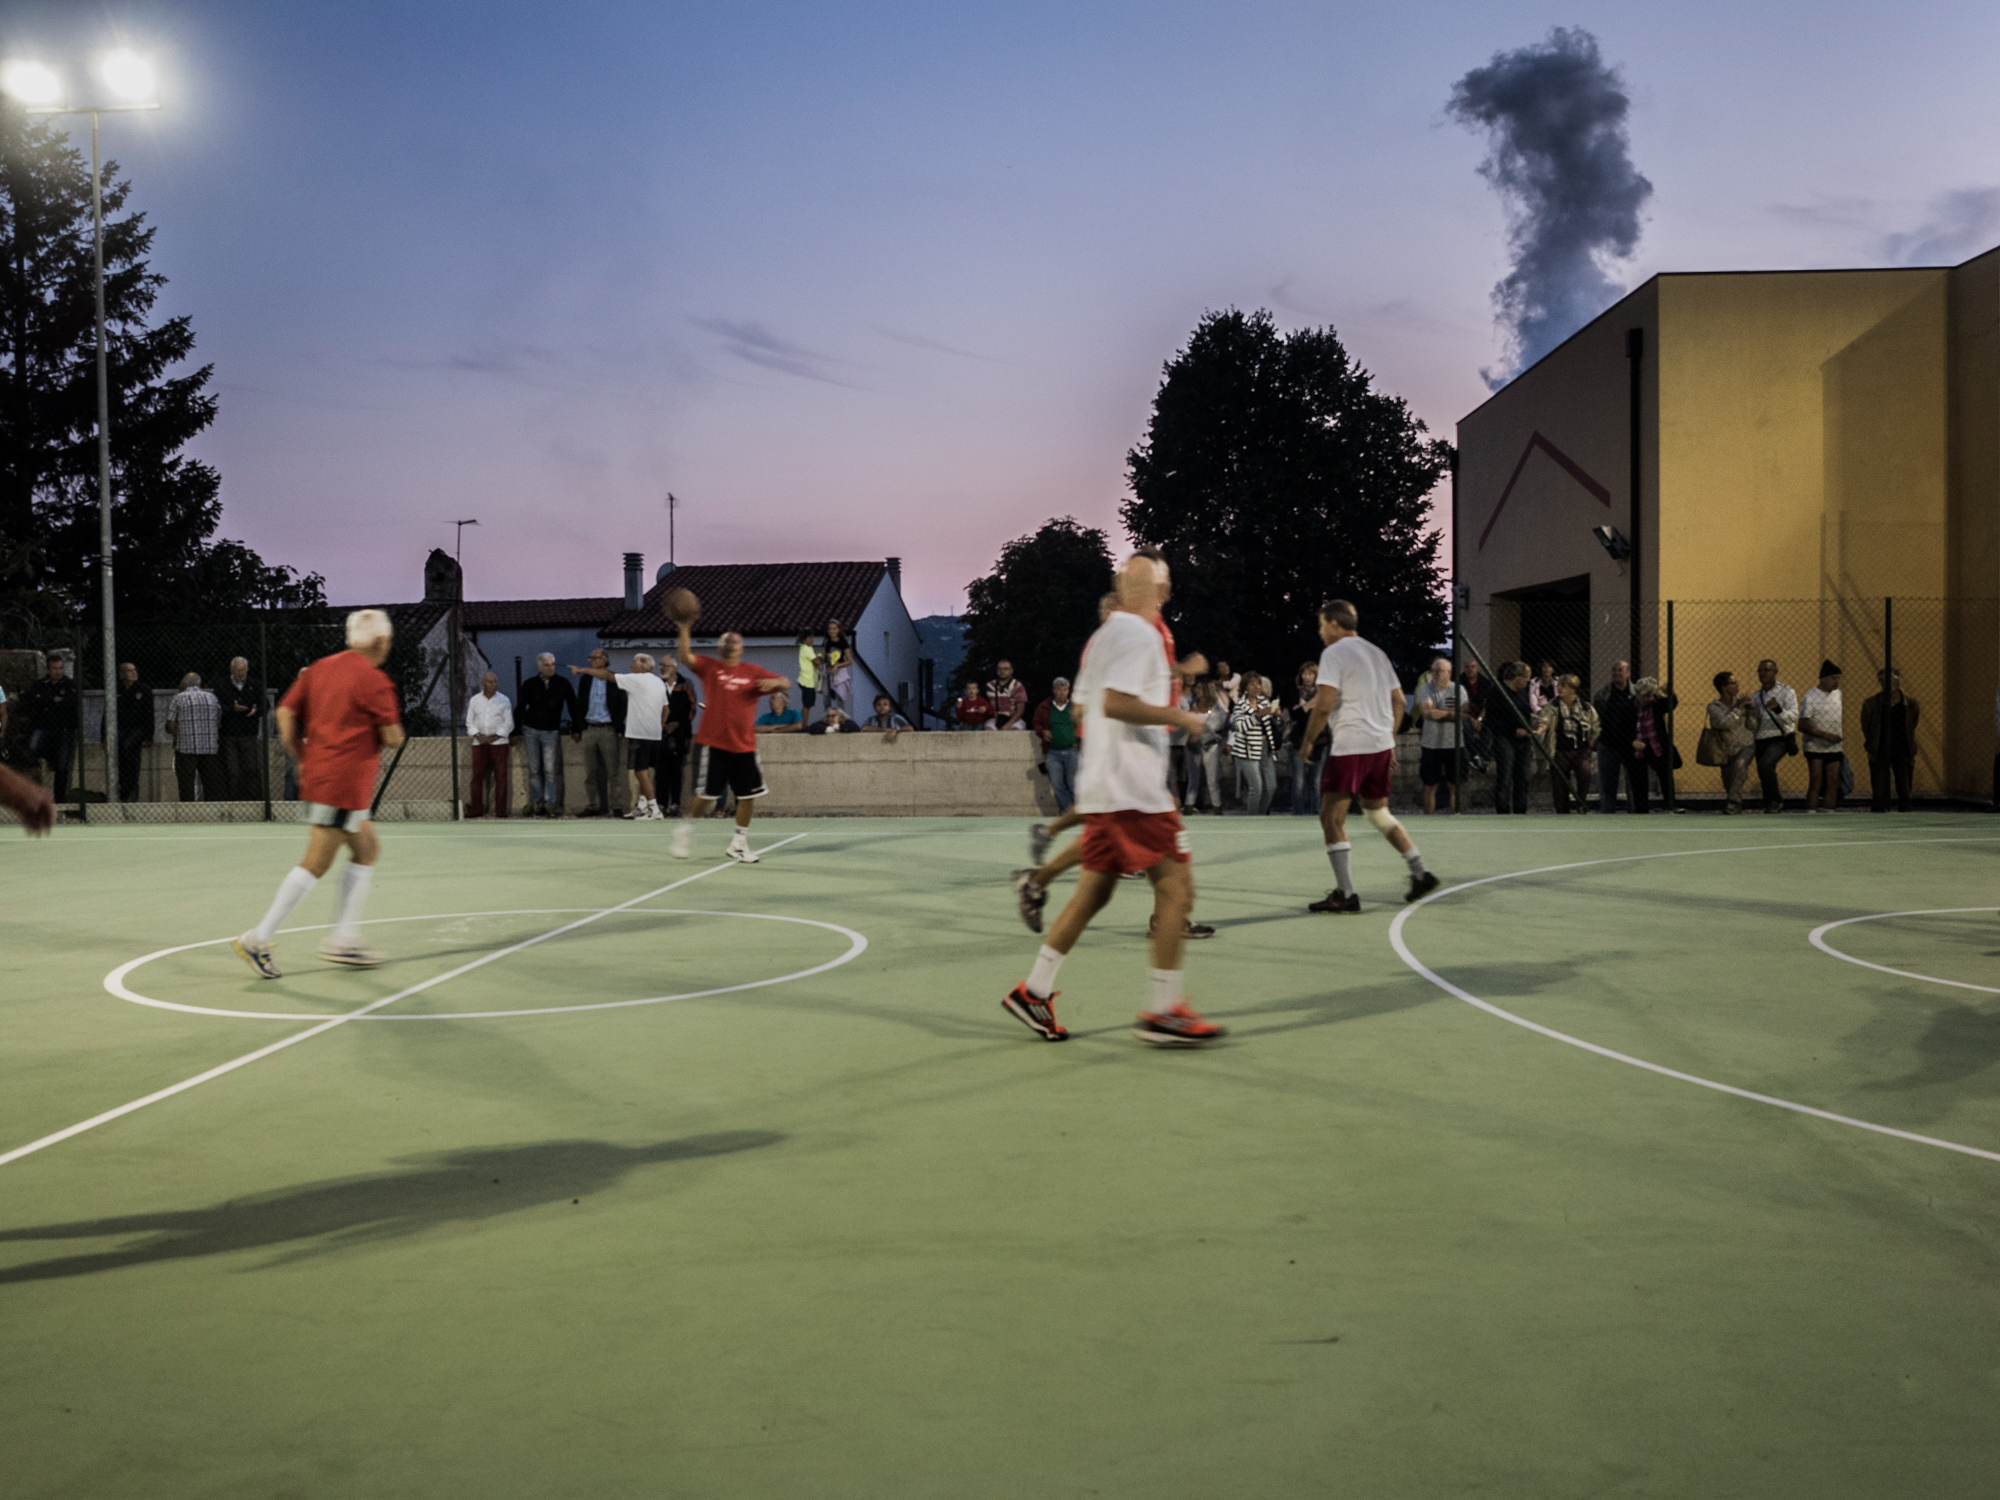  Partita amichevole nel nuovissimo campo di pallacanestro all'aperto nel rione Servola di Trieste, alle spalle una delle "fumate nere" dell'adiacente Ferriera.&nbsp;Trieste, 2015. 